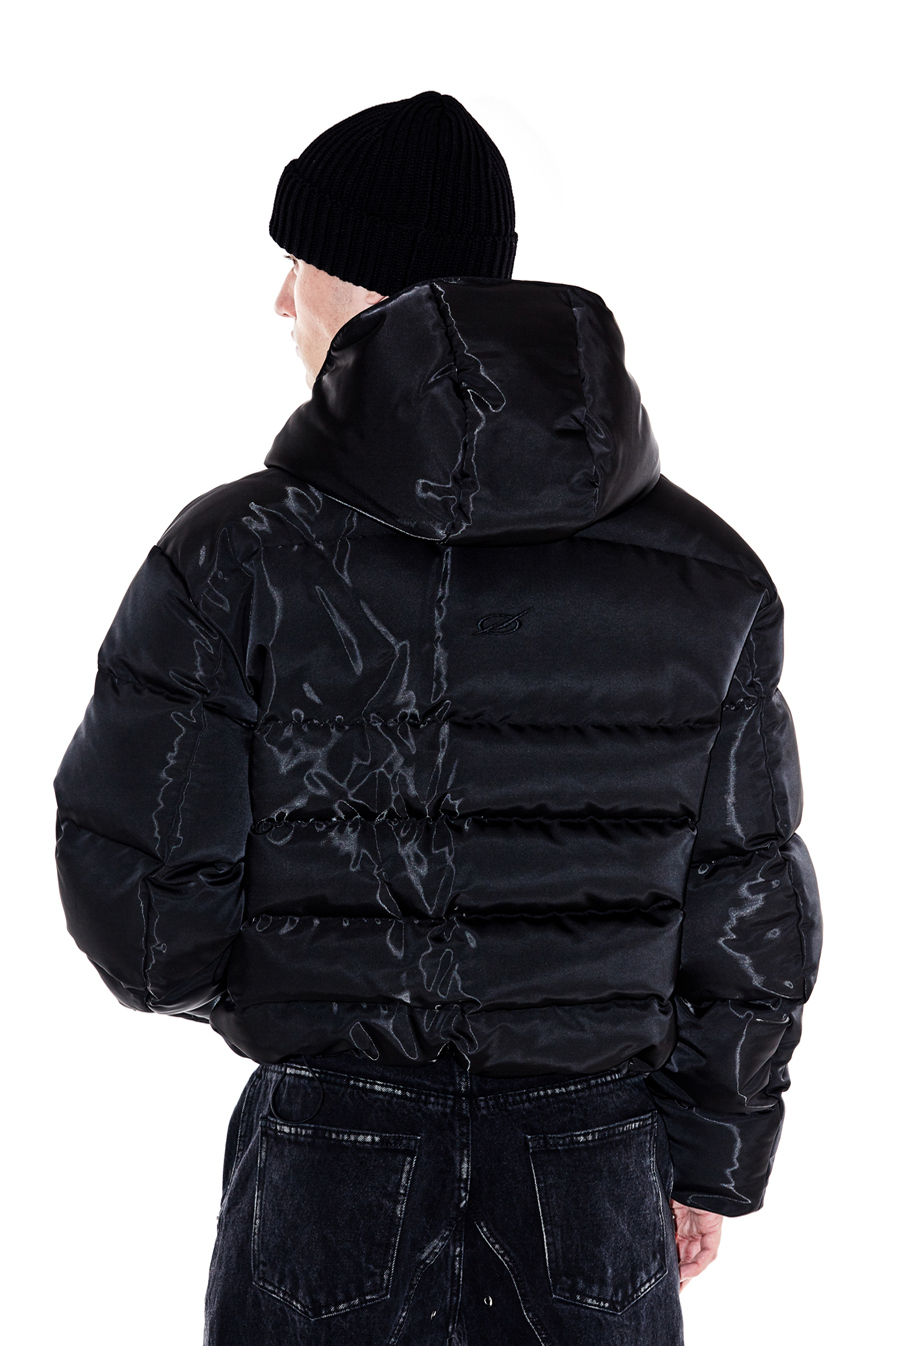 Tunnel Lining hoodie down jacket - Black